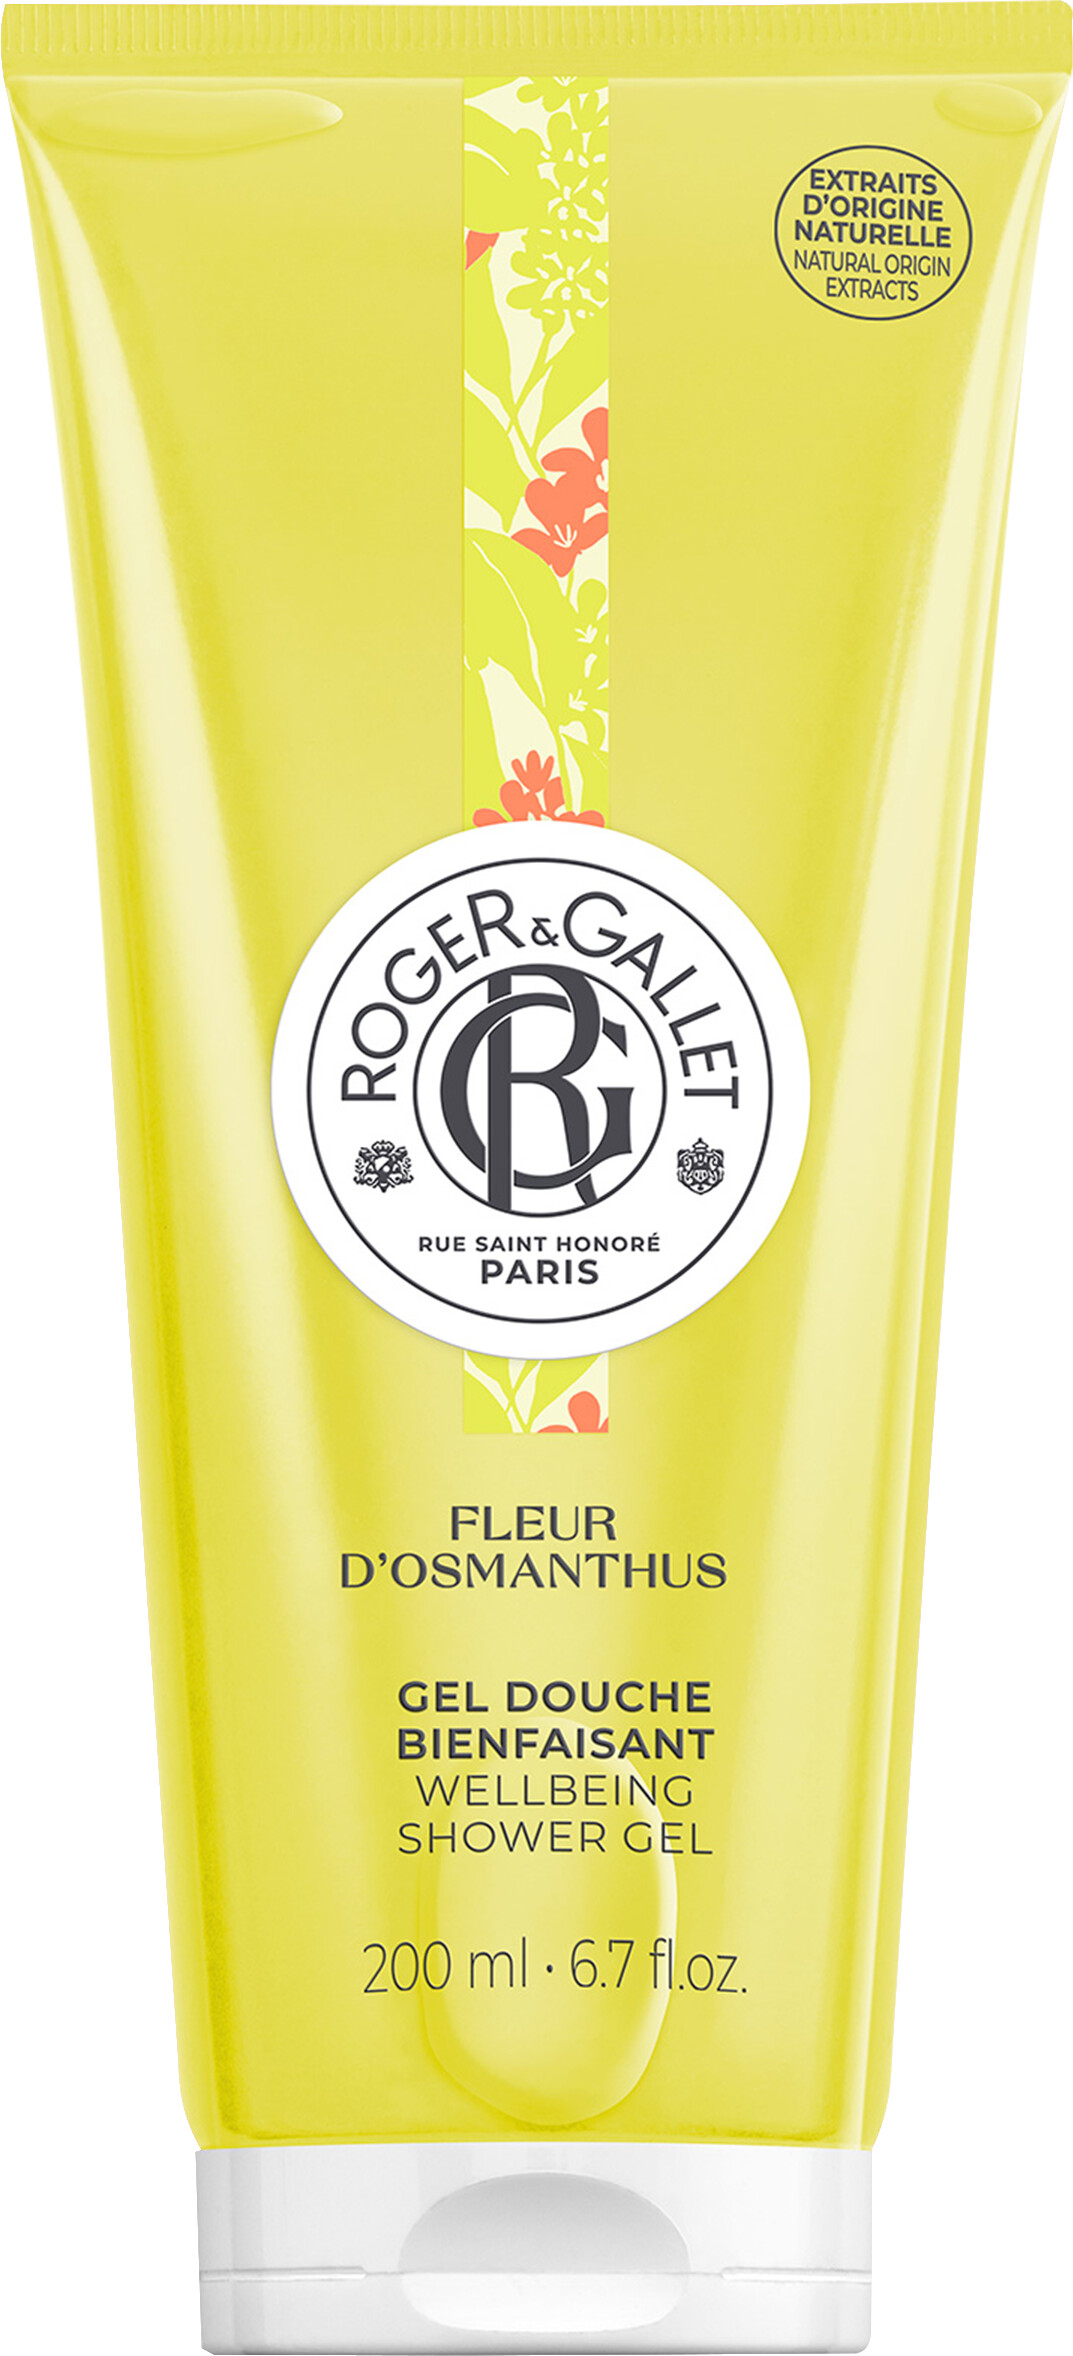 Roger & Gallet Fleur d'Osmanthus Wellbeing Shower Gel 200ml